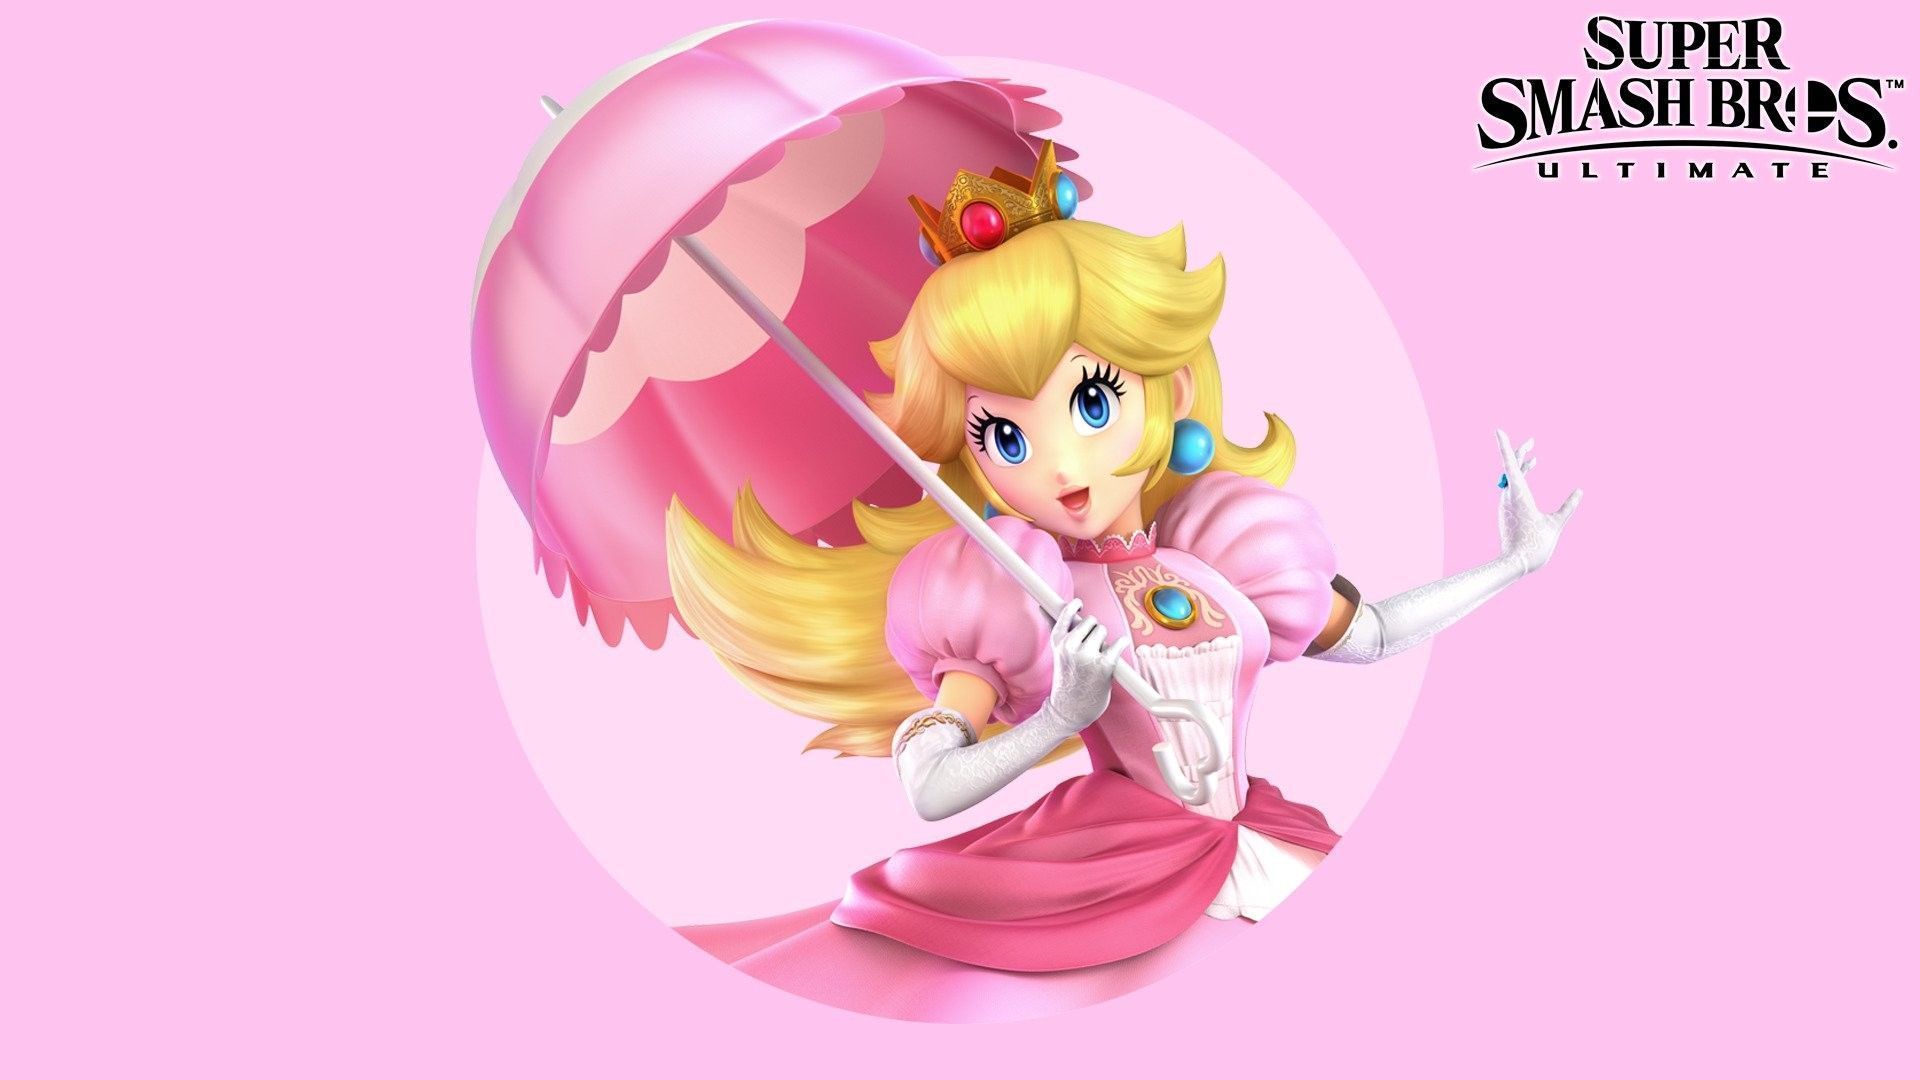 Peach holding an umbrella - Super Mario, Princess Peach